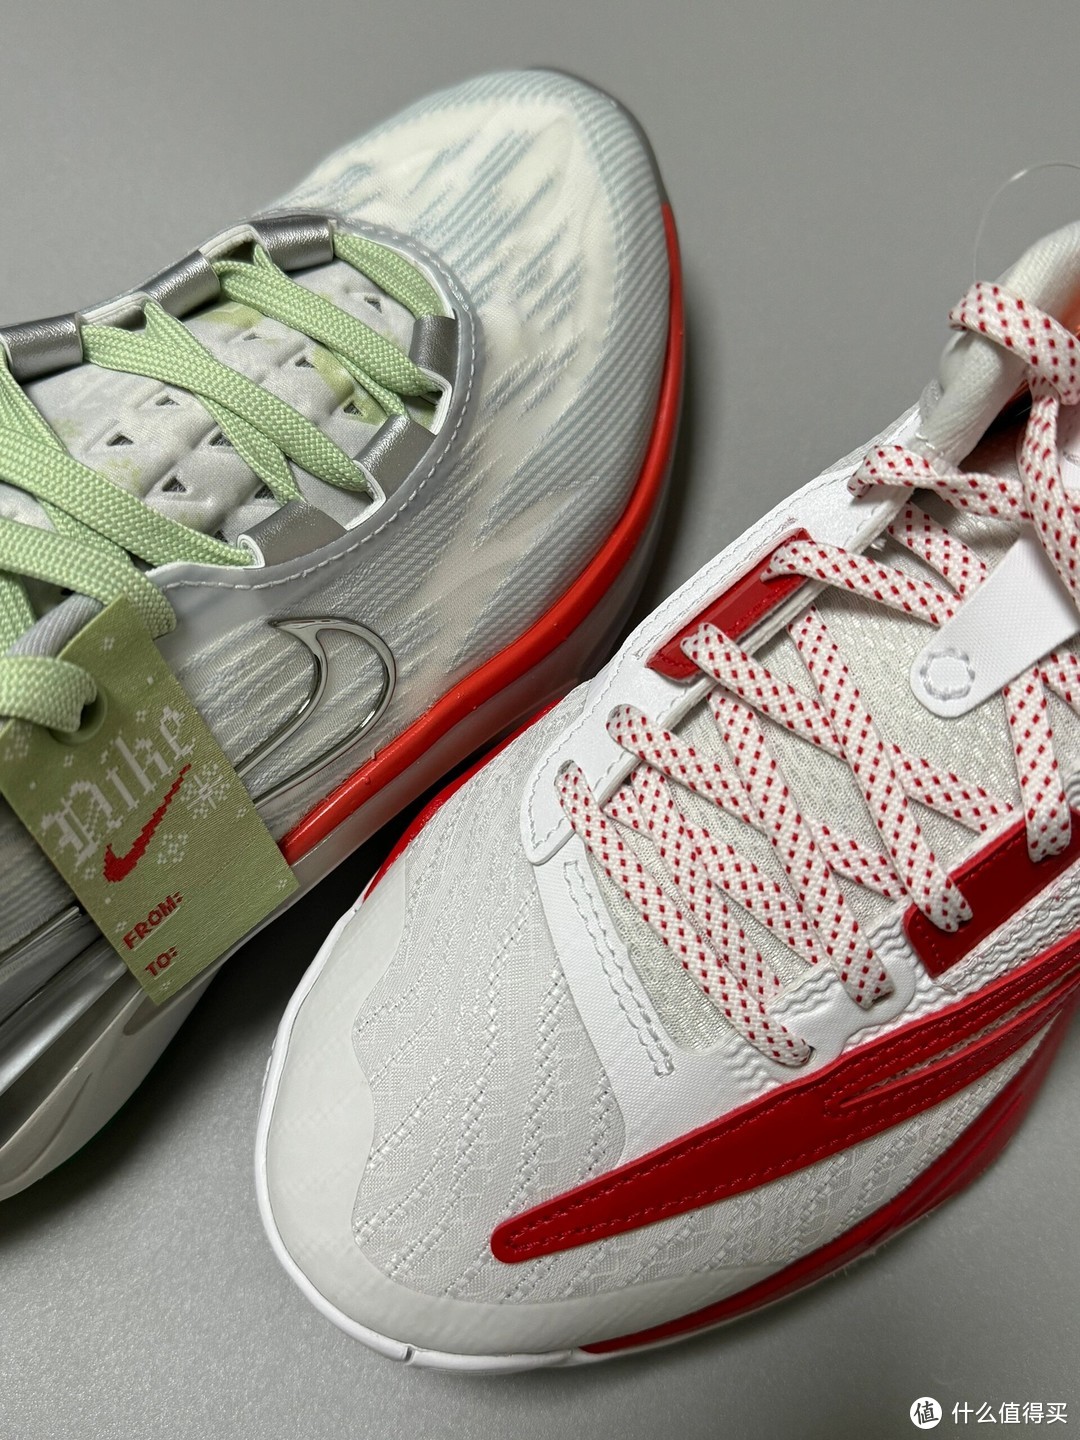 两双备受关注的篮球鞋：一双是耐克的“字母哥”支线3代，另一双则是钩子的GT Cut 2。这两双鞋各有特色